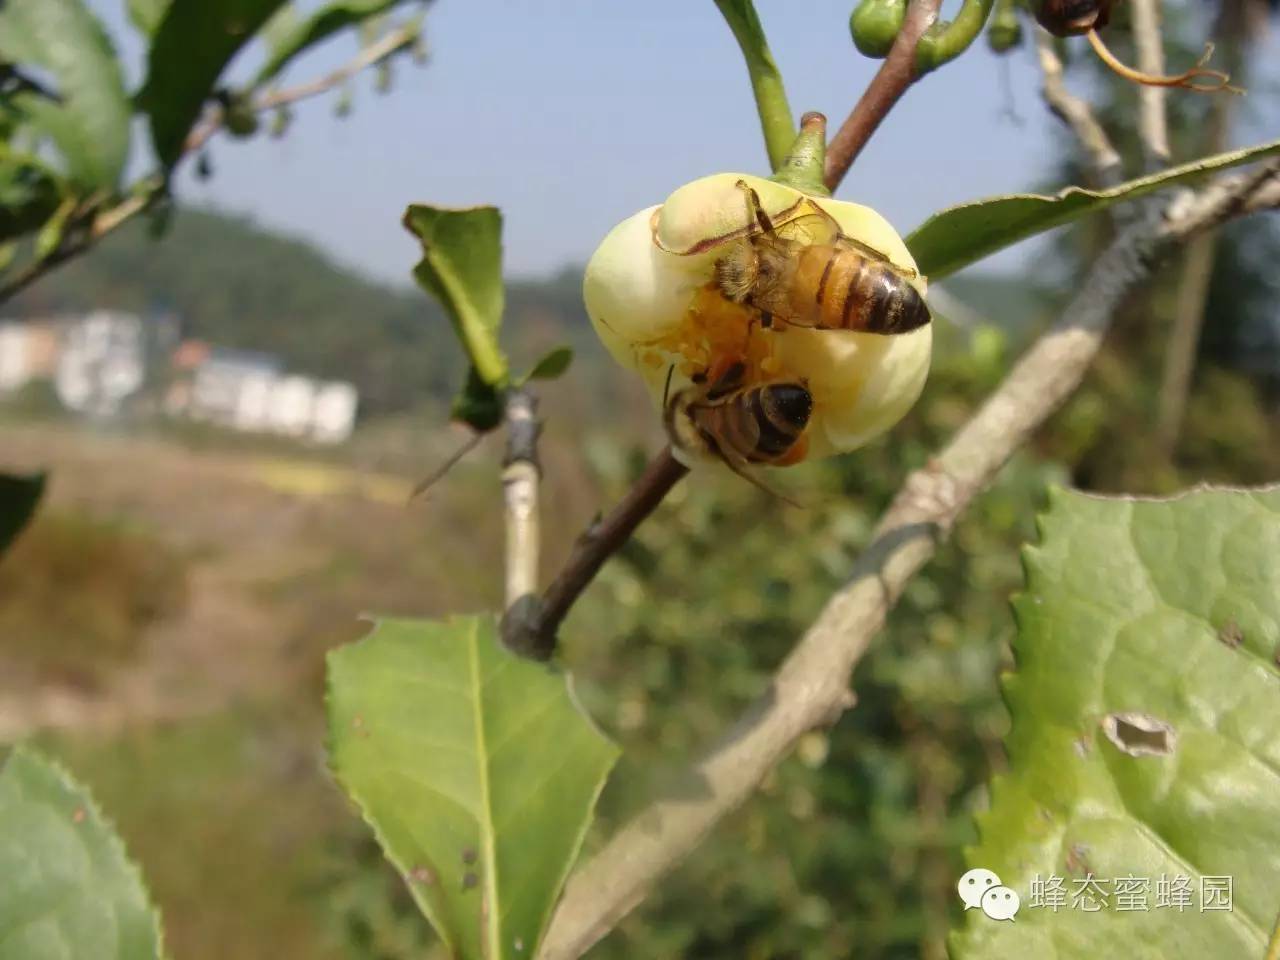 蜂蜜发酸 蜂蜜冷藏结晶 蜂蜜不耐受 蜂蜜能和枸杞 茶能和蜂蜜一起喝吗